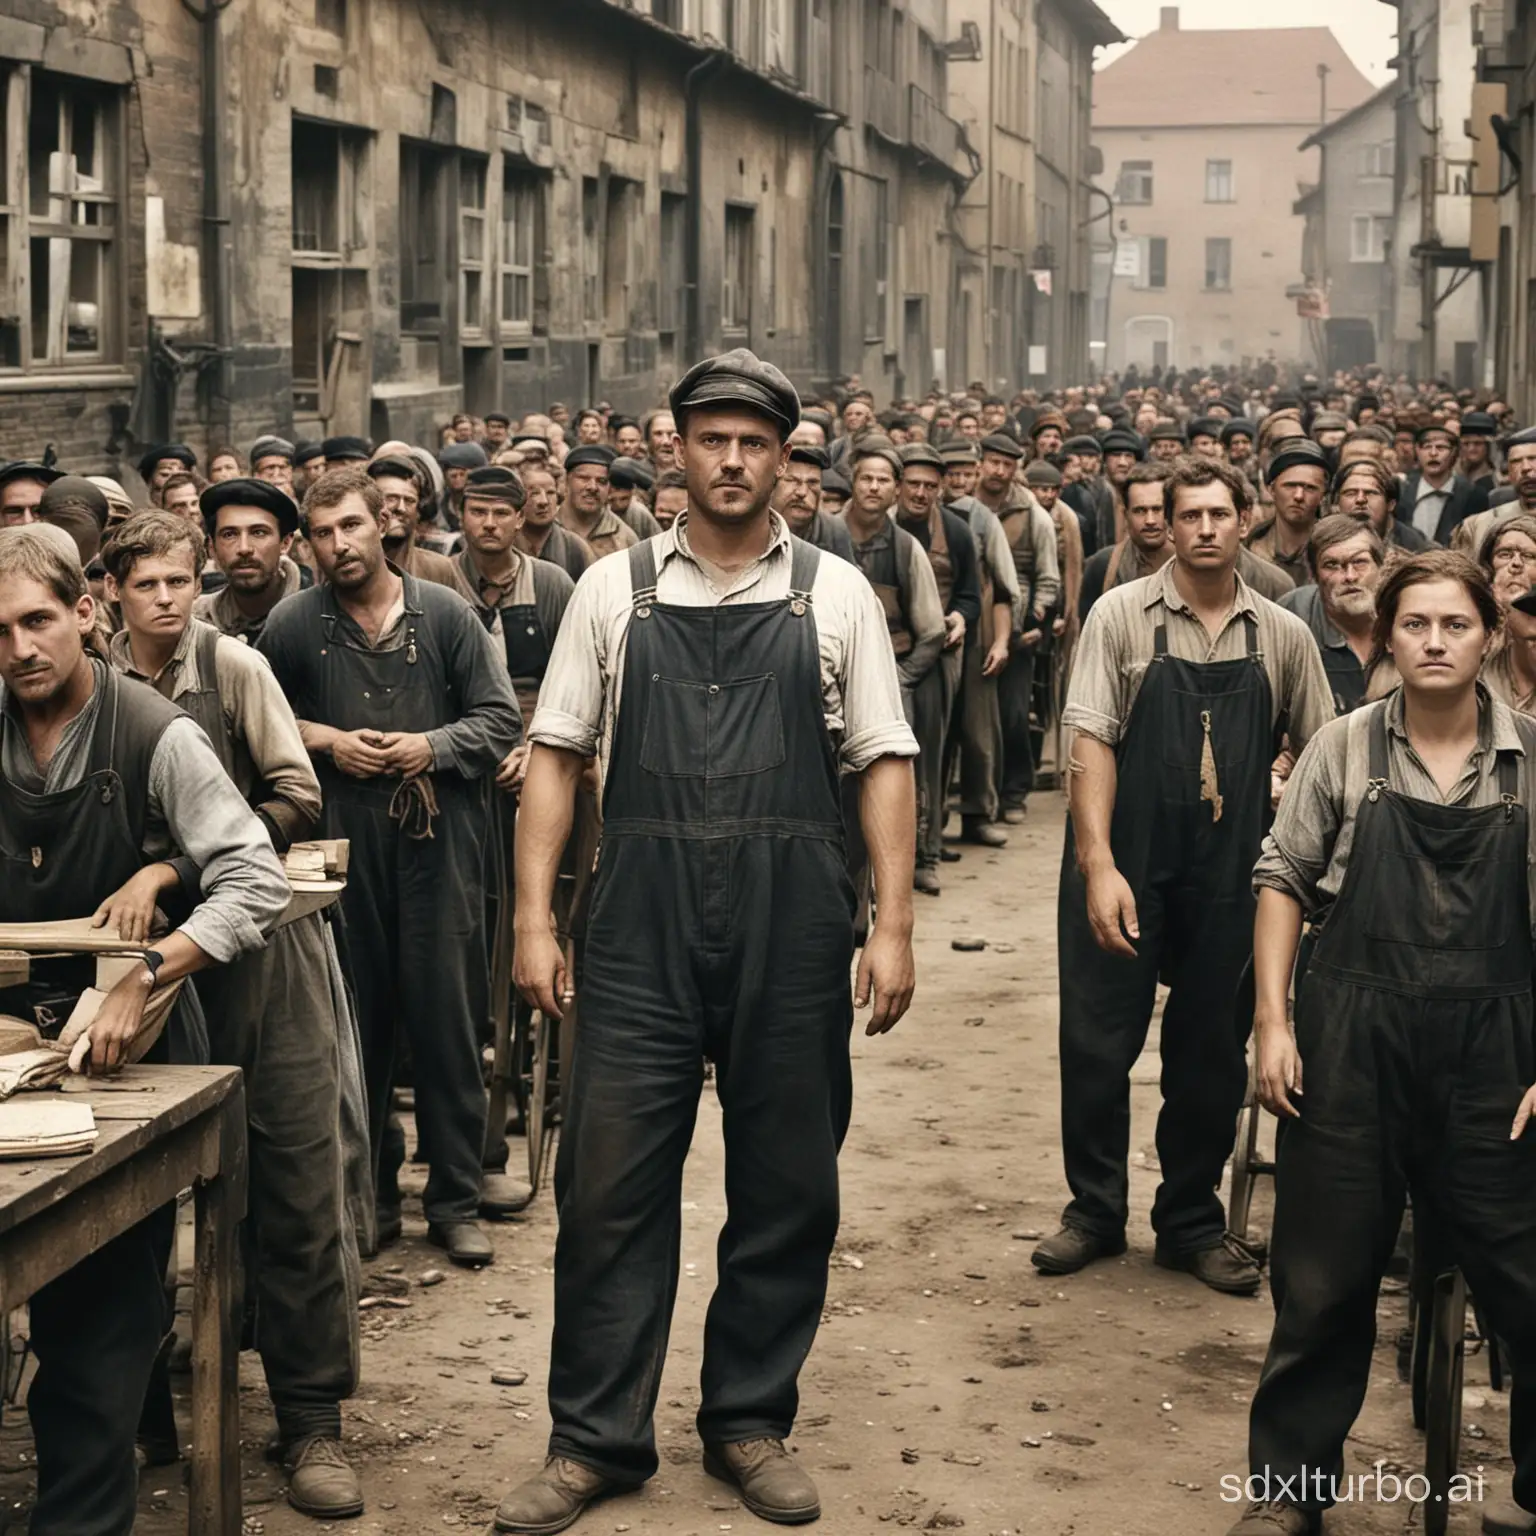 Zeige mir die soziale frage während der industrialisierung in deutschland der arbeiter